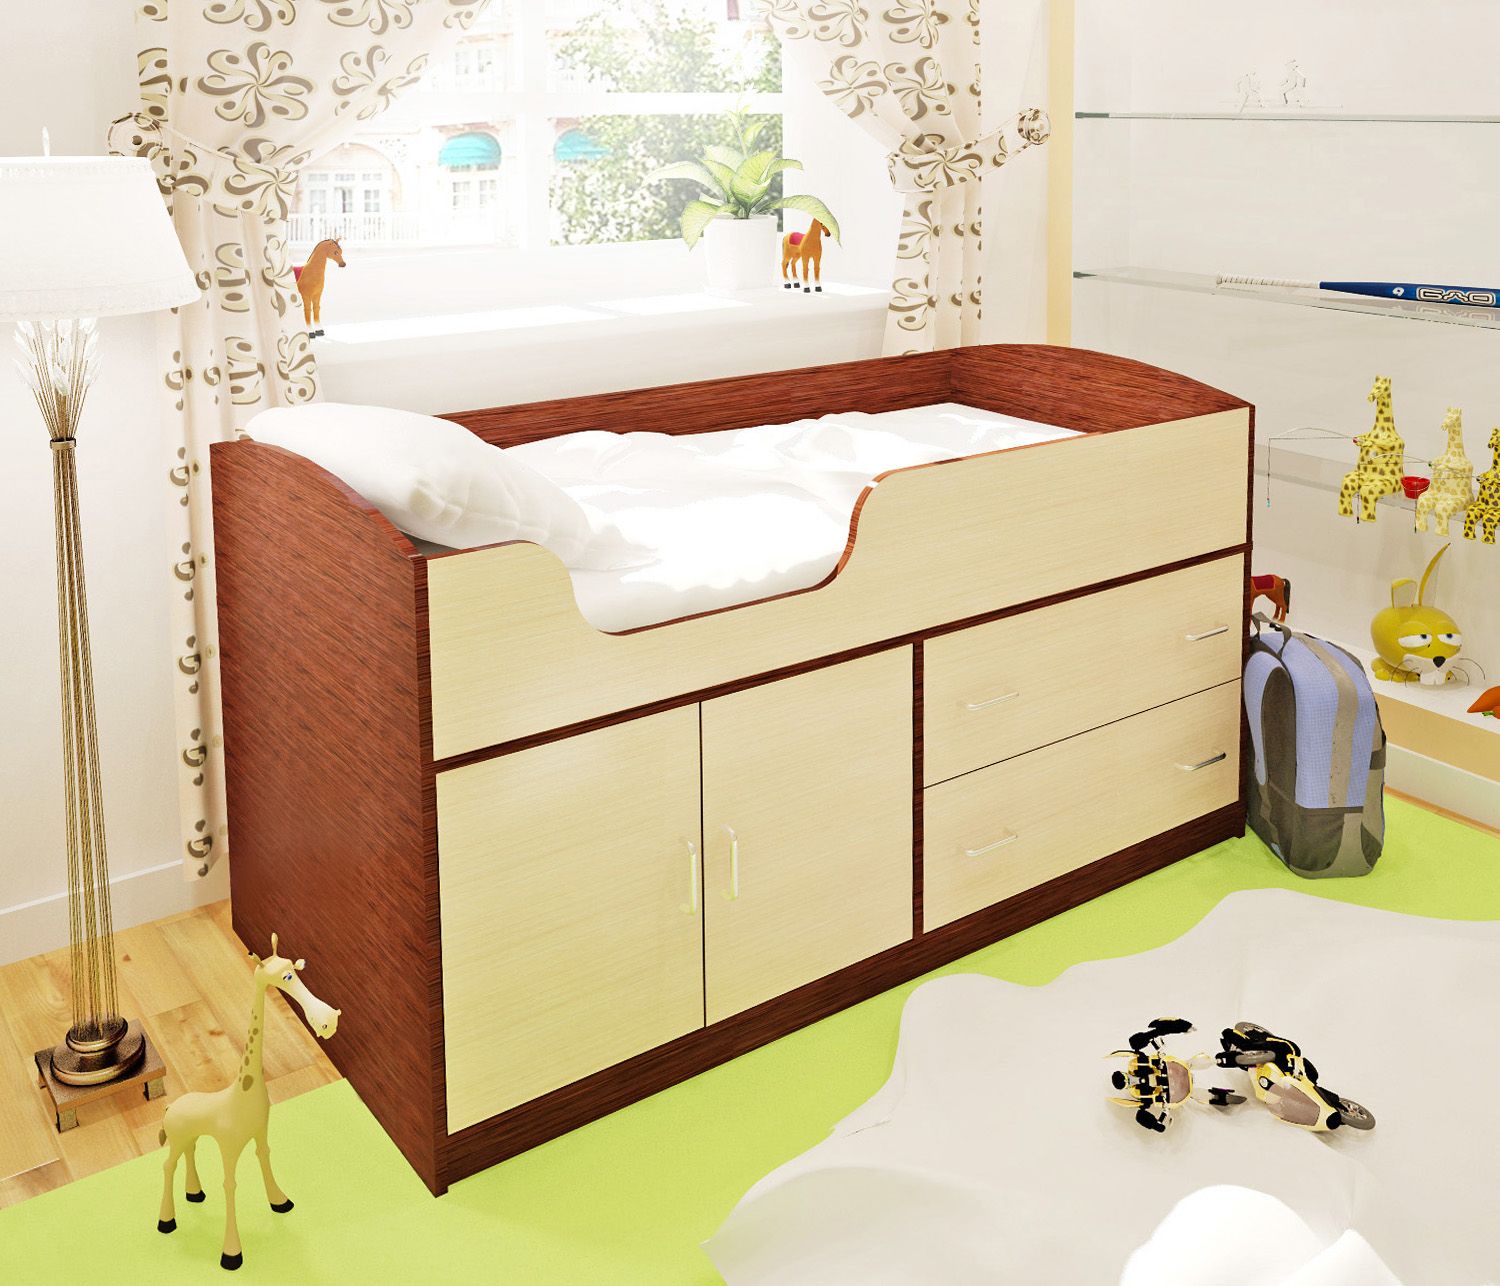 кроватка Жирафы, детская кровать машина) произведены из